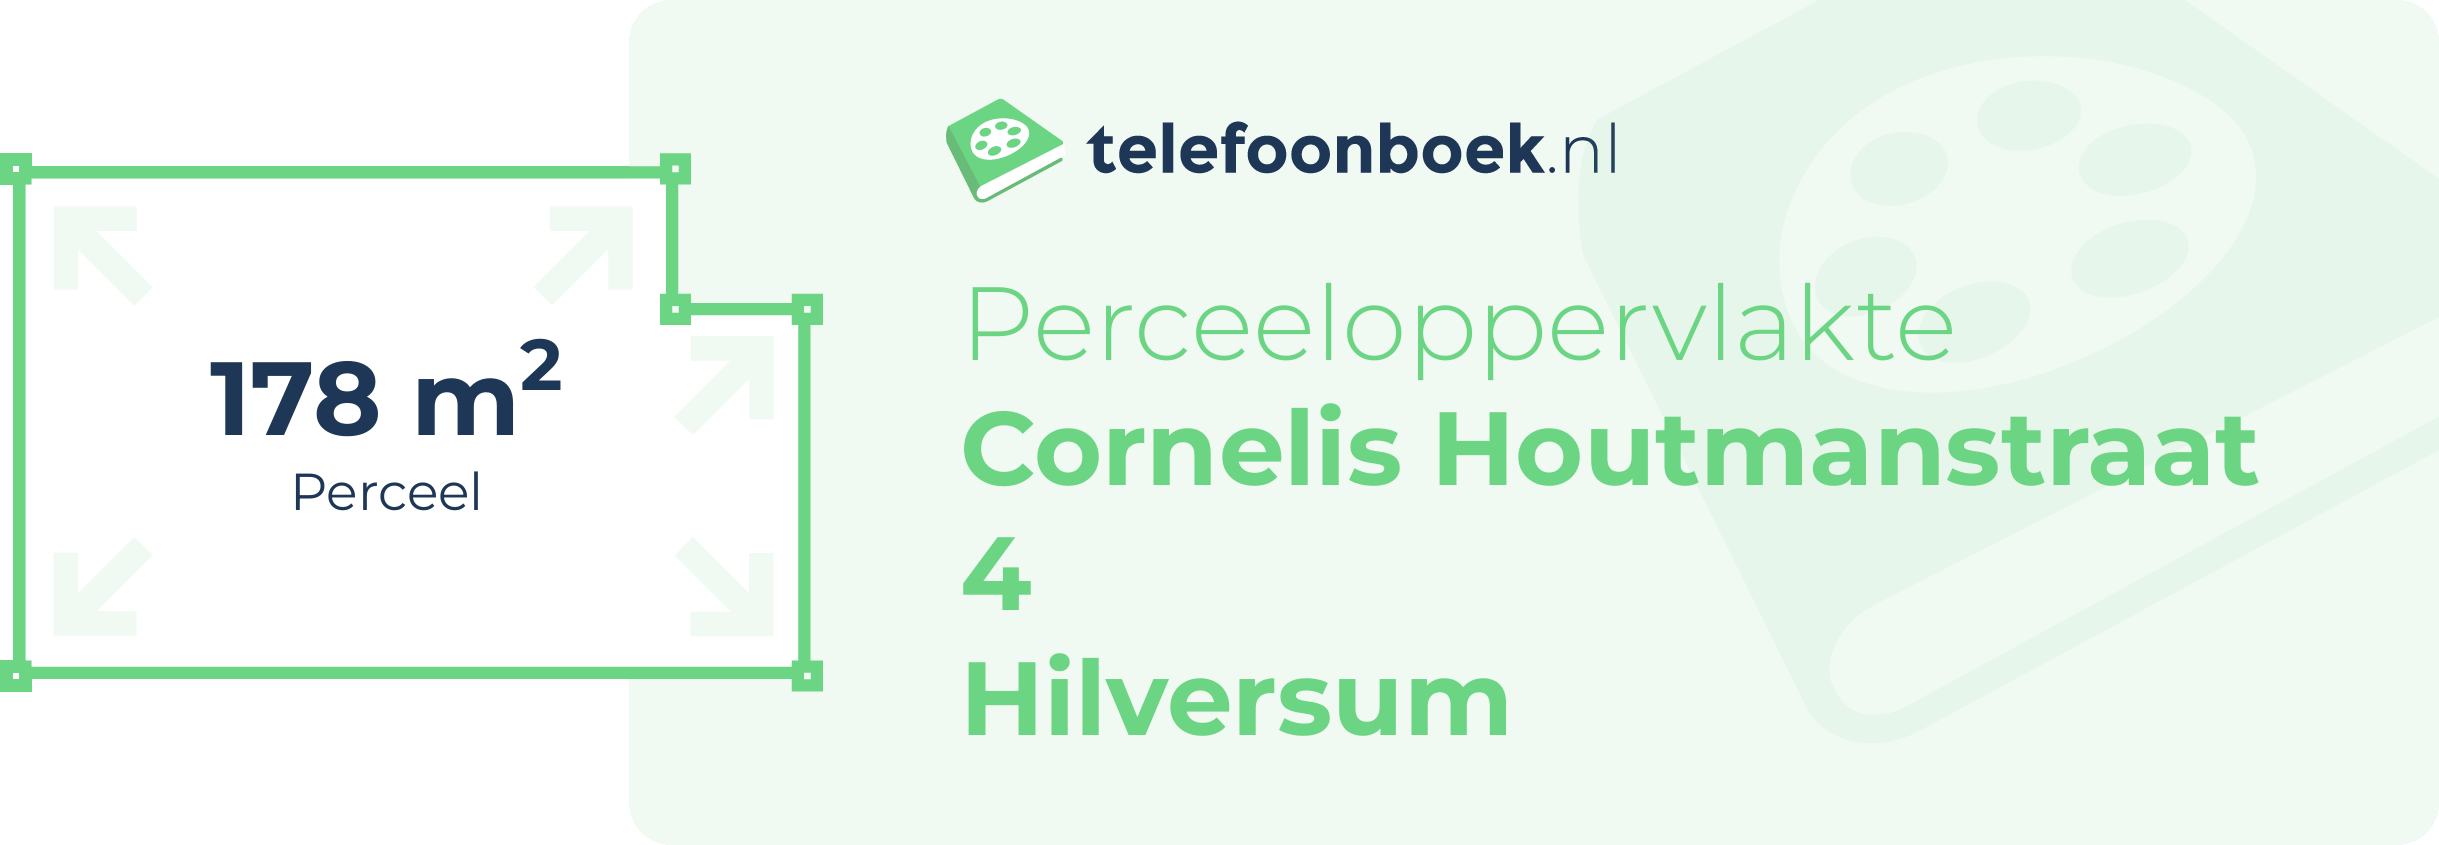 Perceeloppervlakte Cornelis Houtmanstraat 4 Hilversum